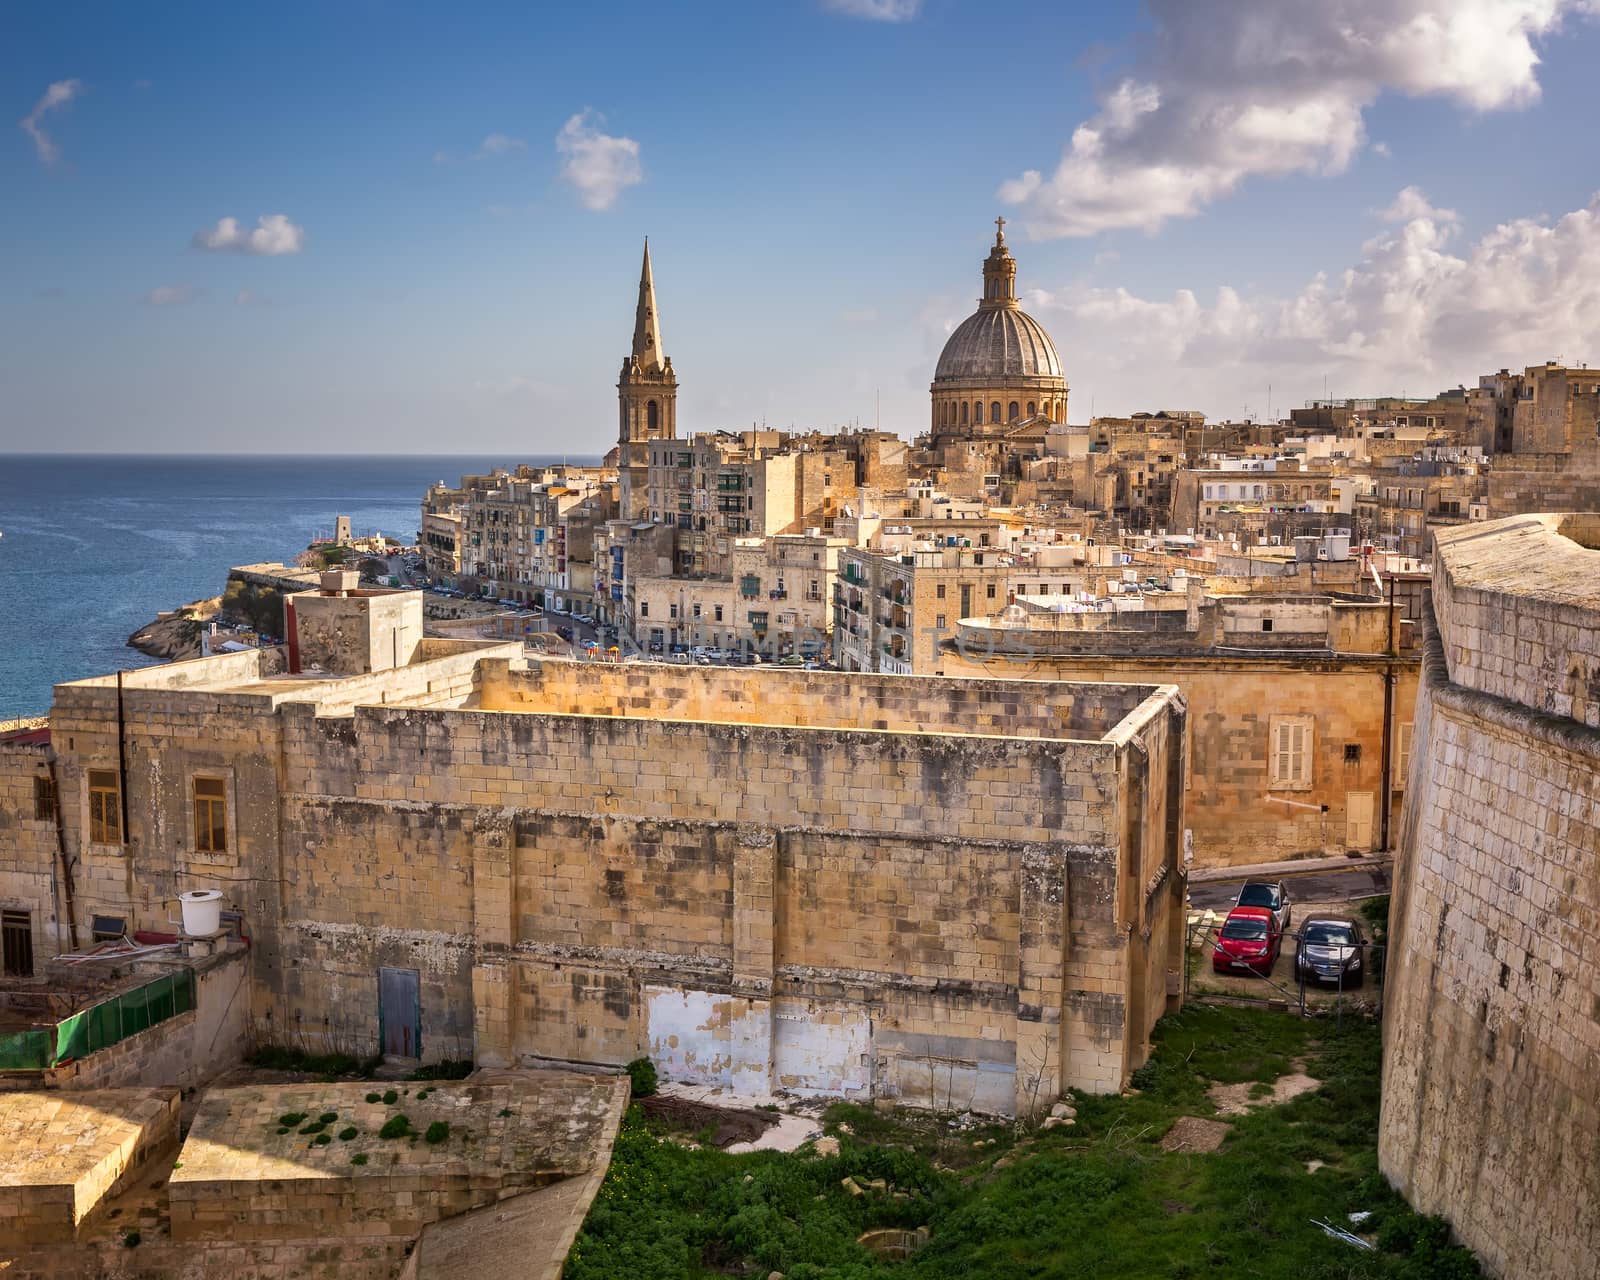 Skyline of the Maltese Capital city Valletta, Malta